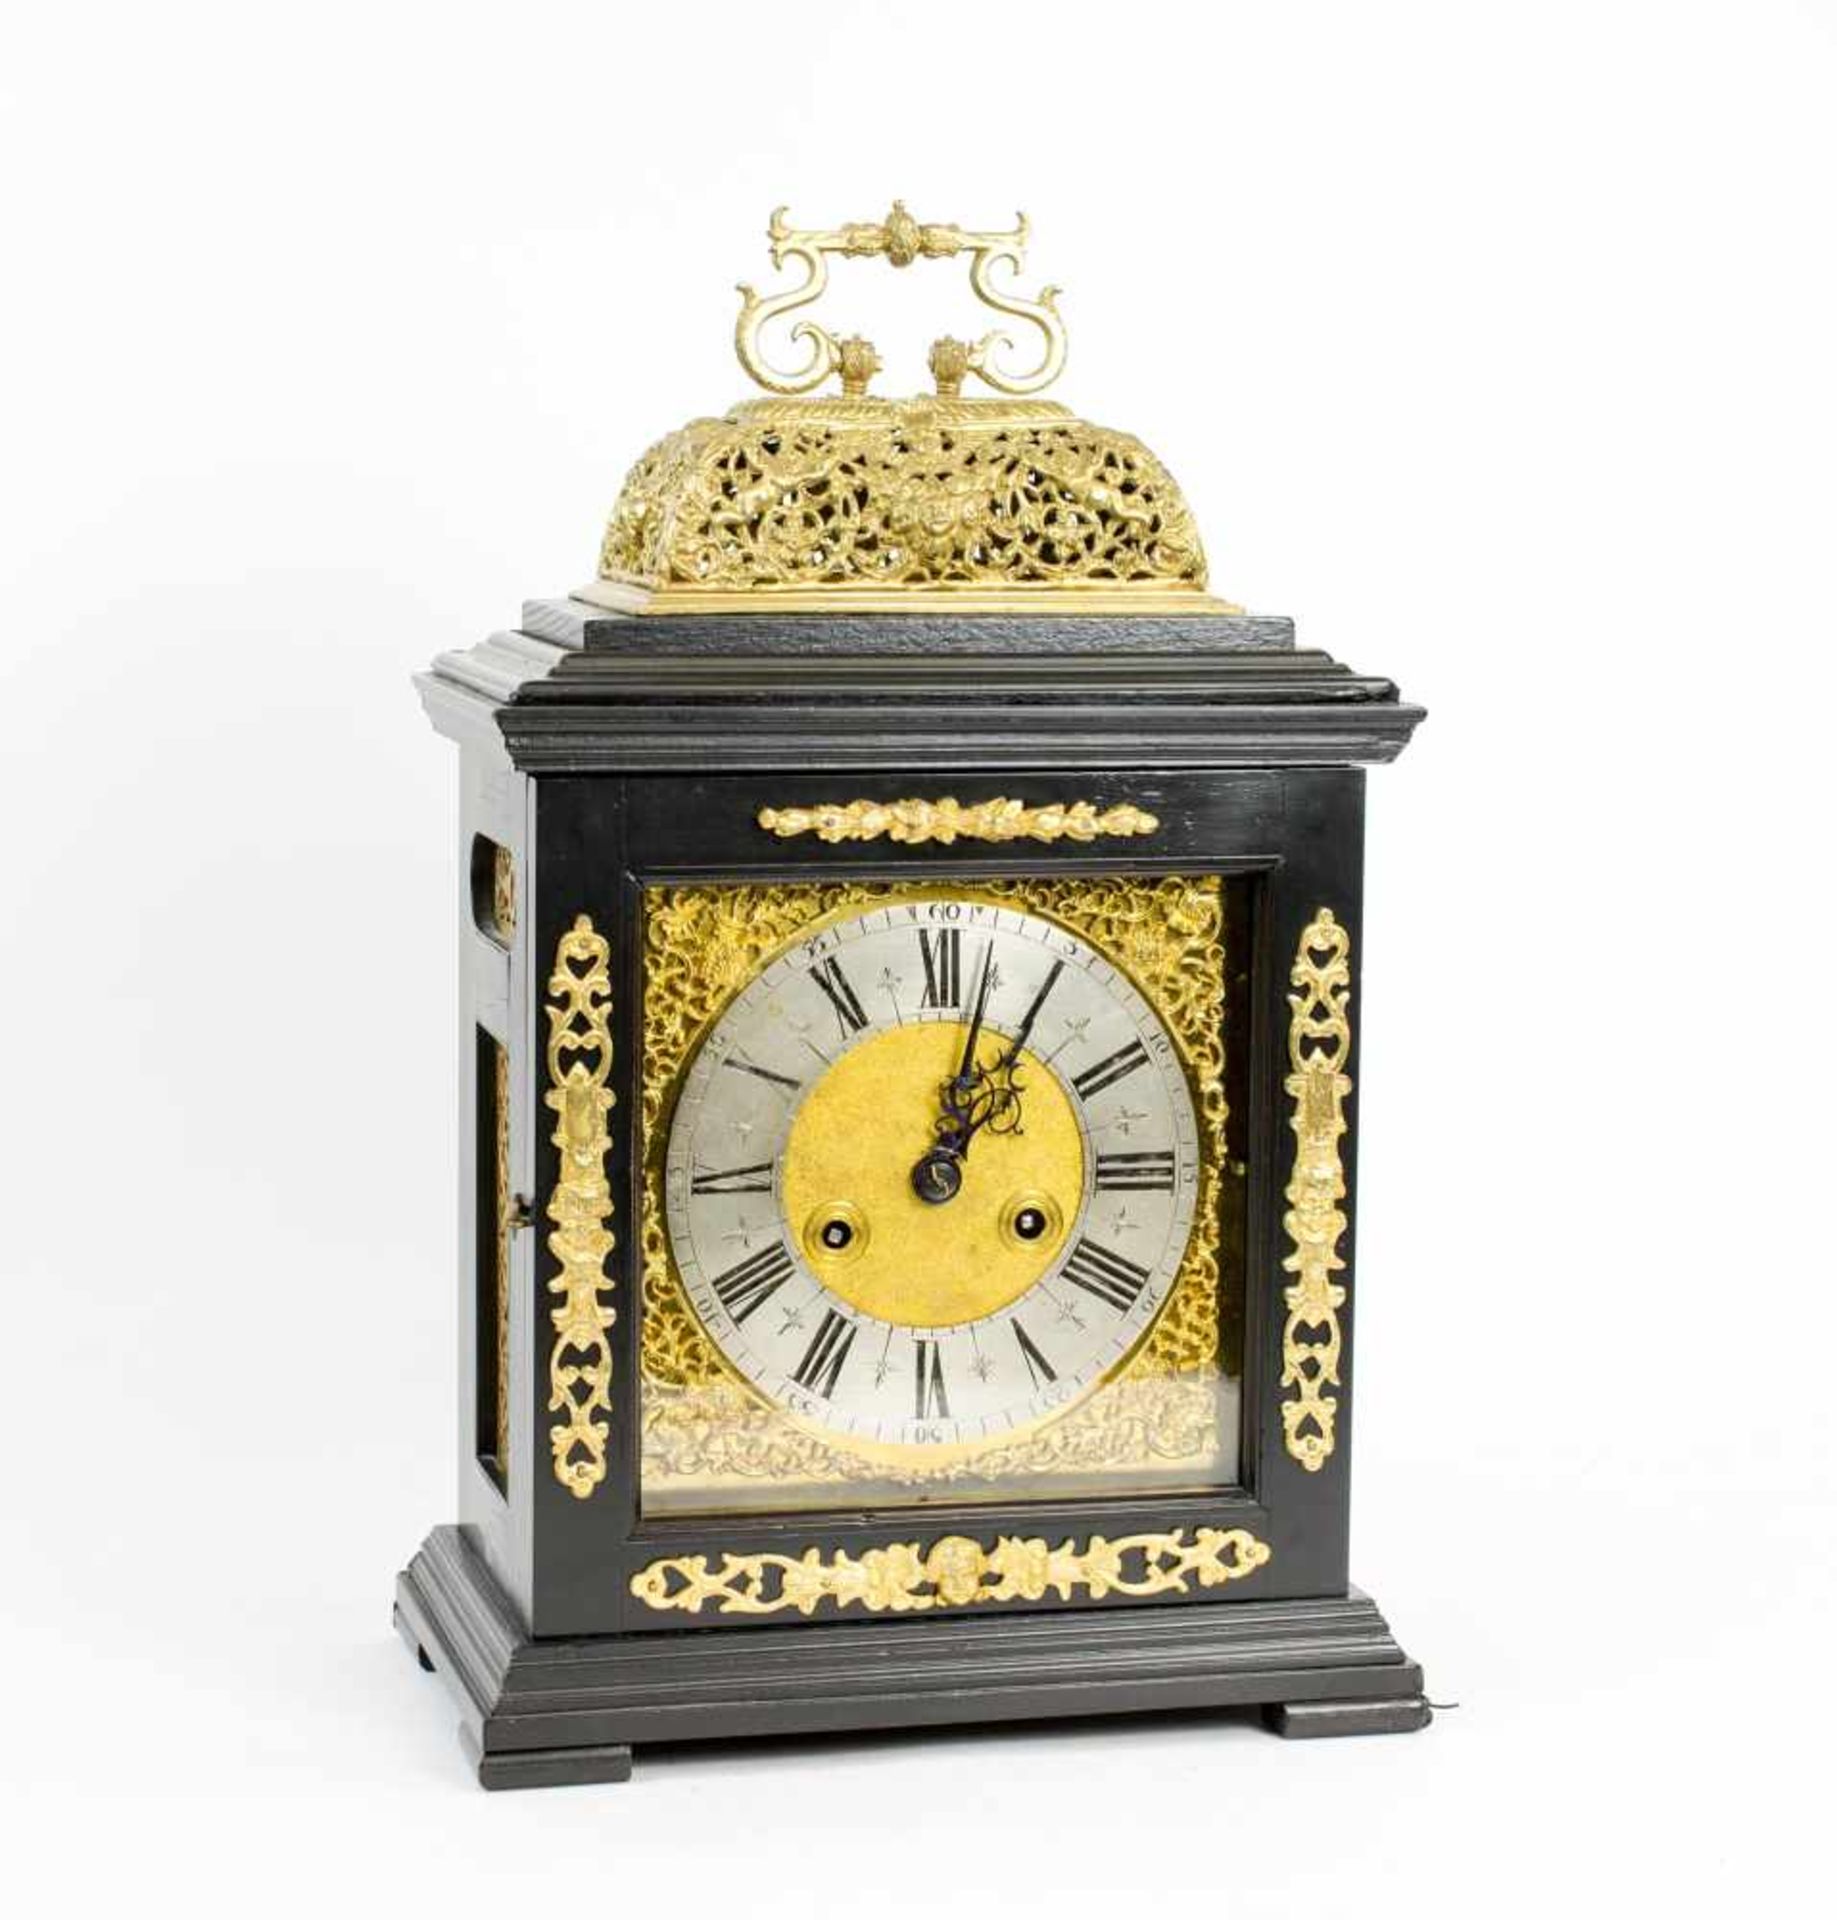 Kommodenuhr (Bracket Clock) England, Ende 18. Jh., hochrechteckiger Gehäuseaufbau in ebonisiertem